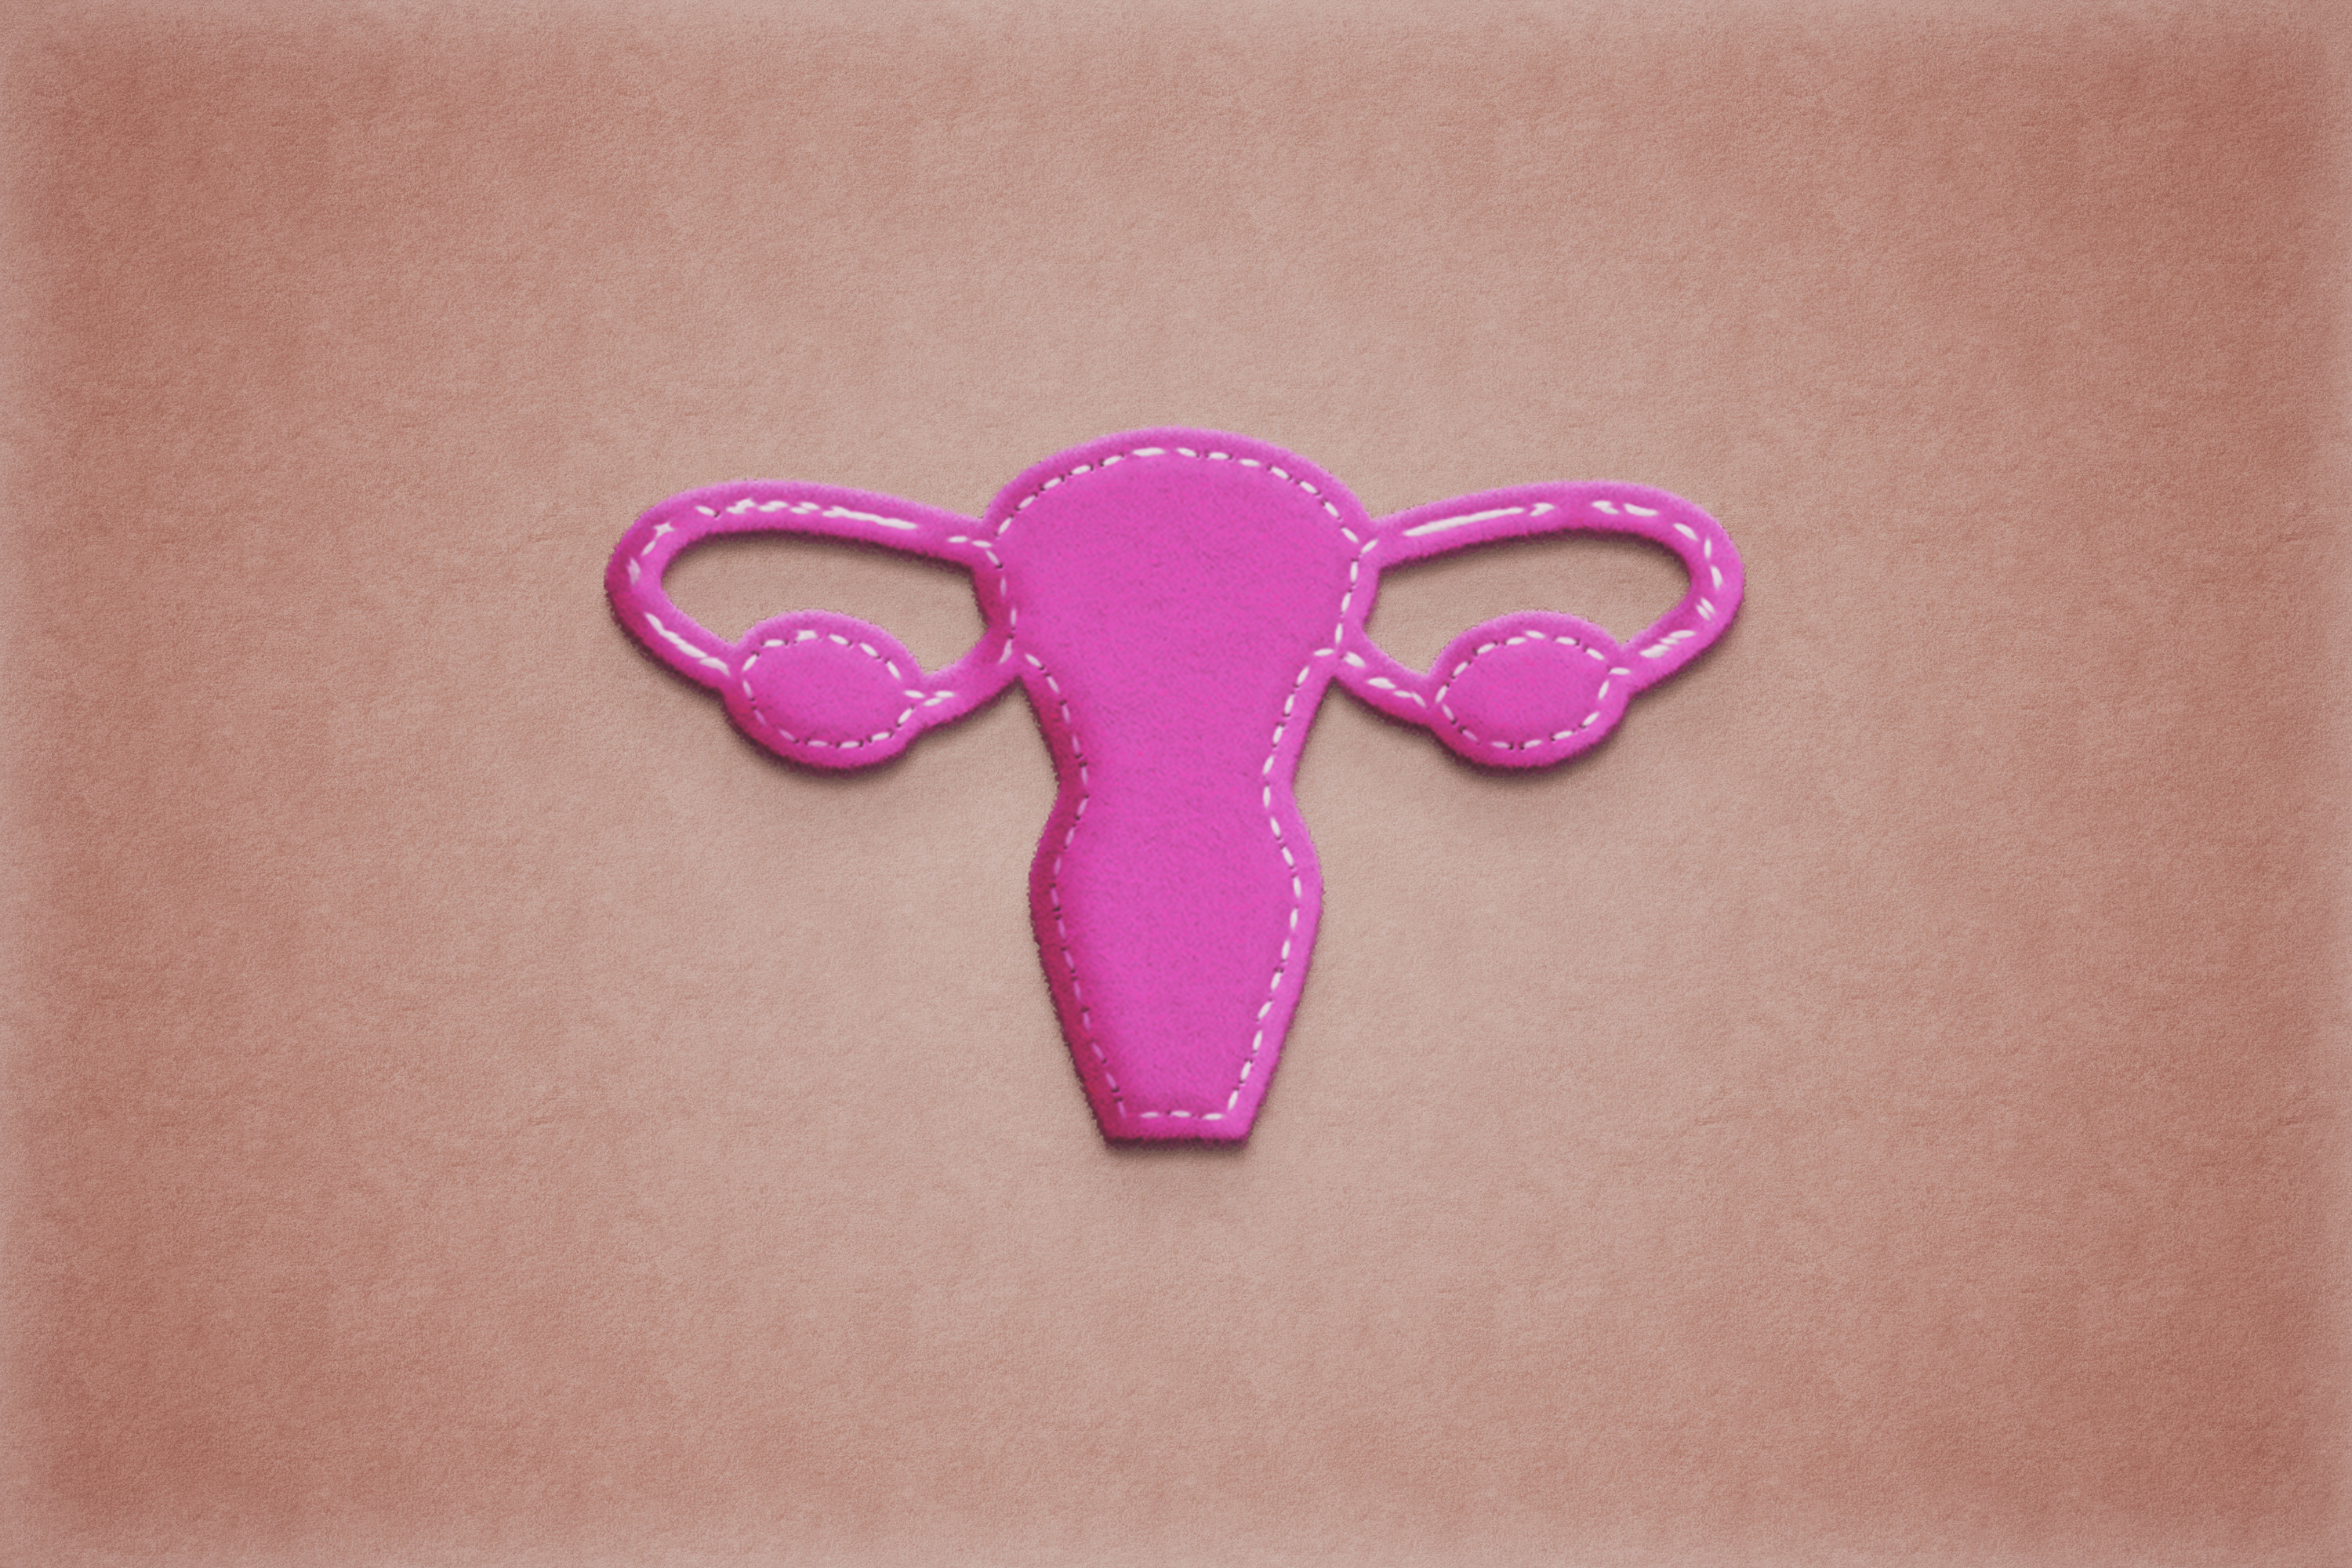 Art concept of uterus